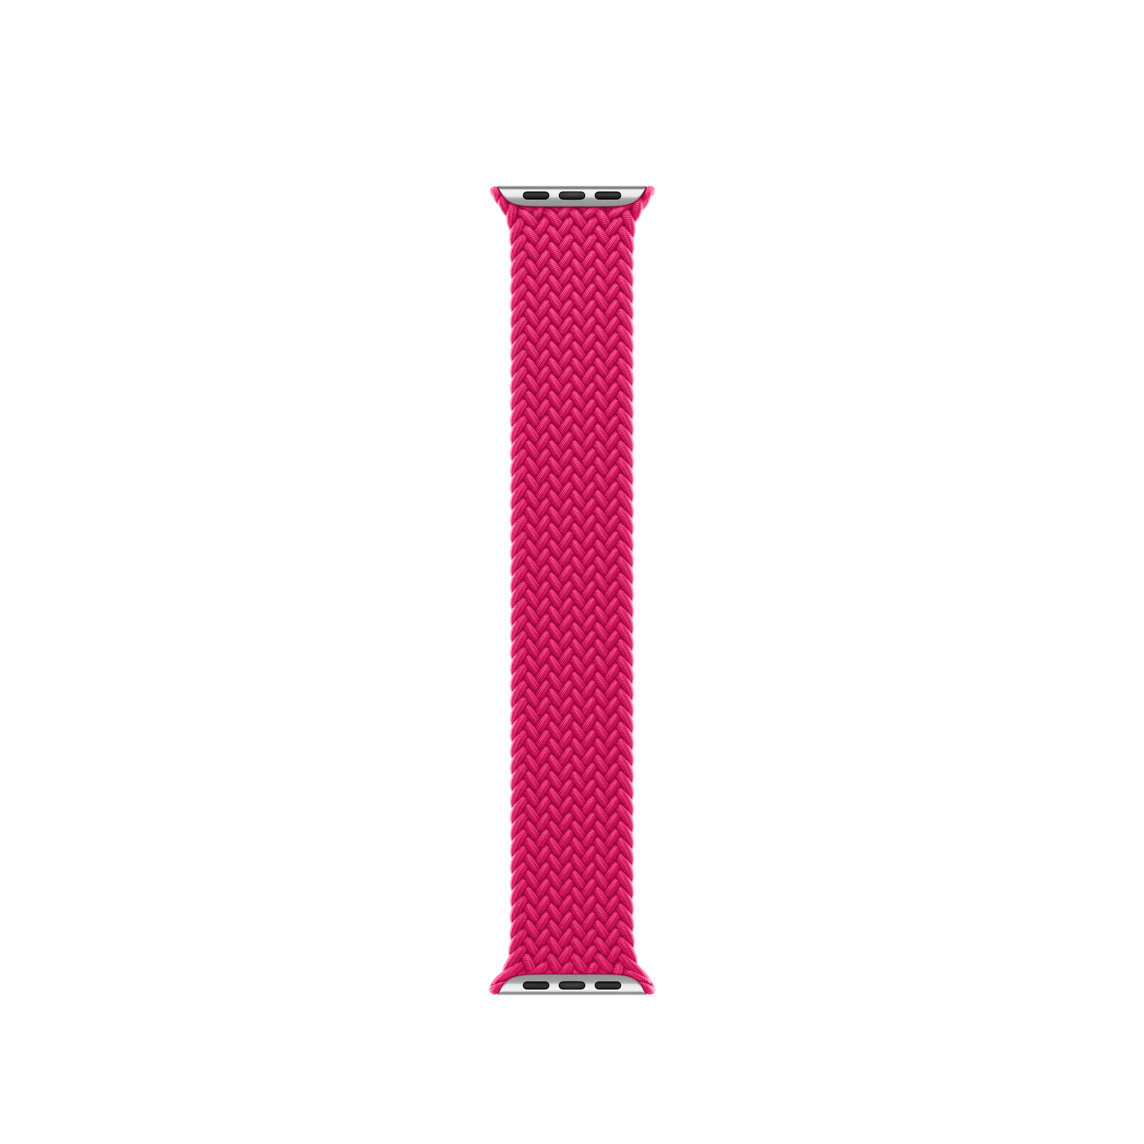 Geflochtenes Solo Loop Armband in Himbeere, gewebte Polyester- und Silikonfäden ohne Schnallen oder Schließen
